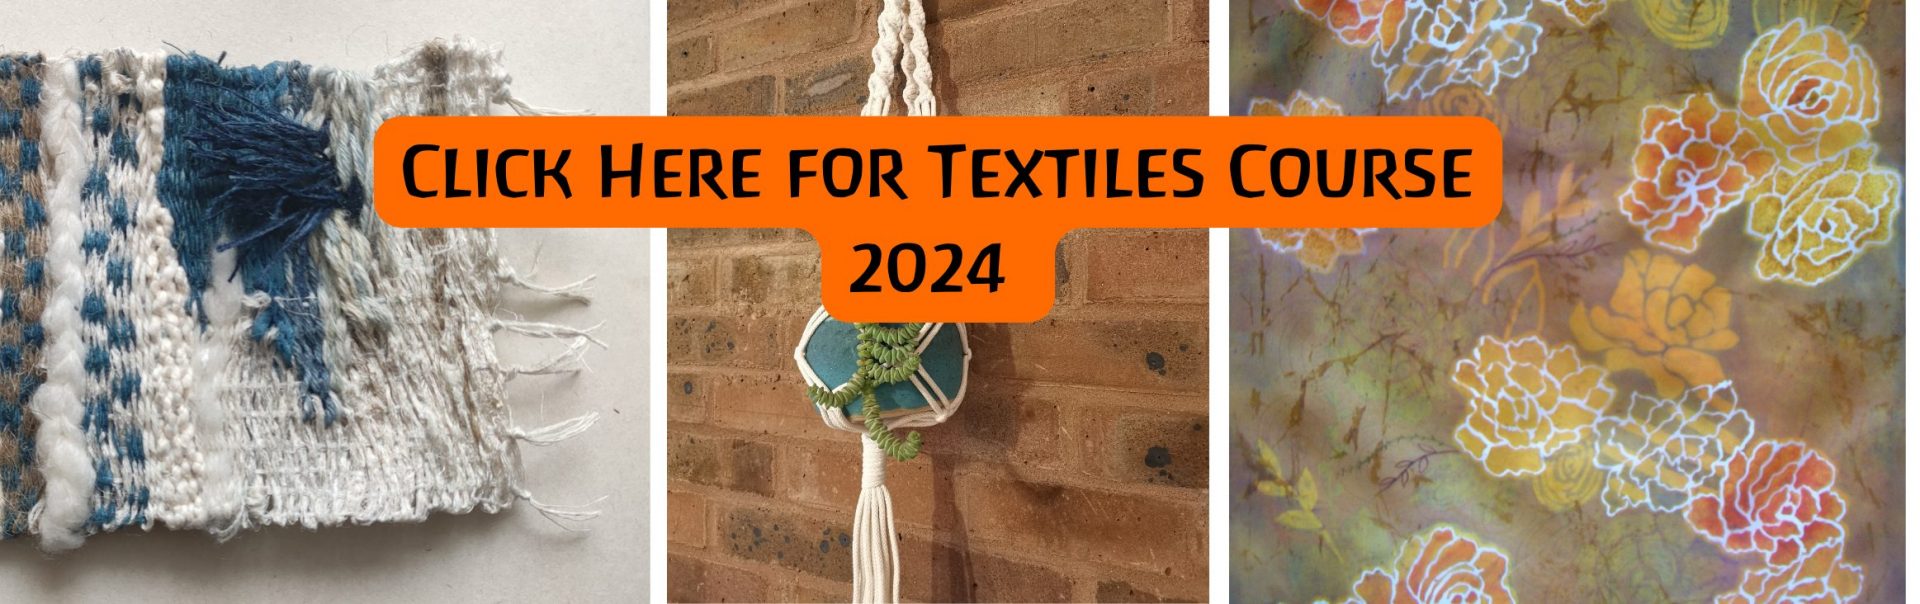 Textiles Course 2024